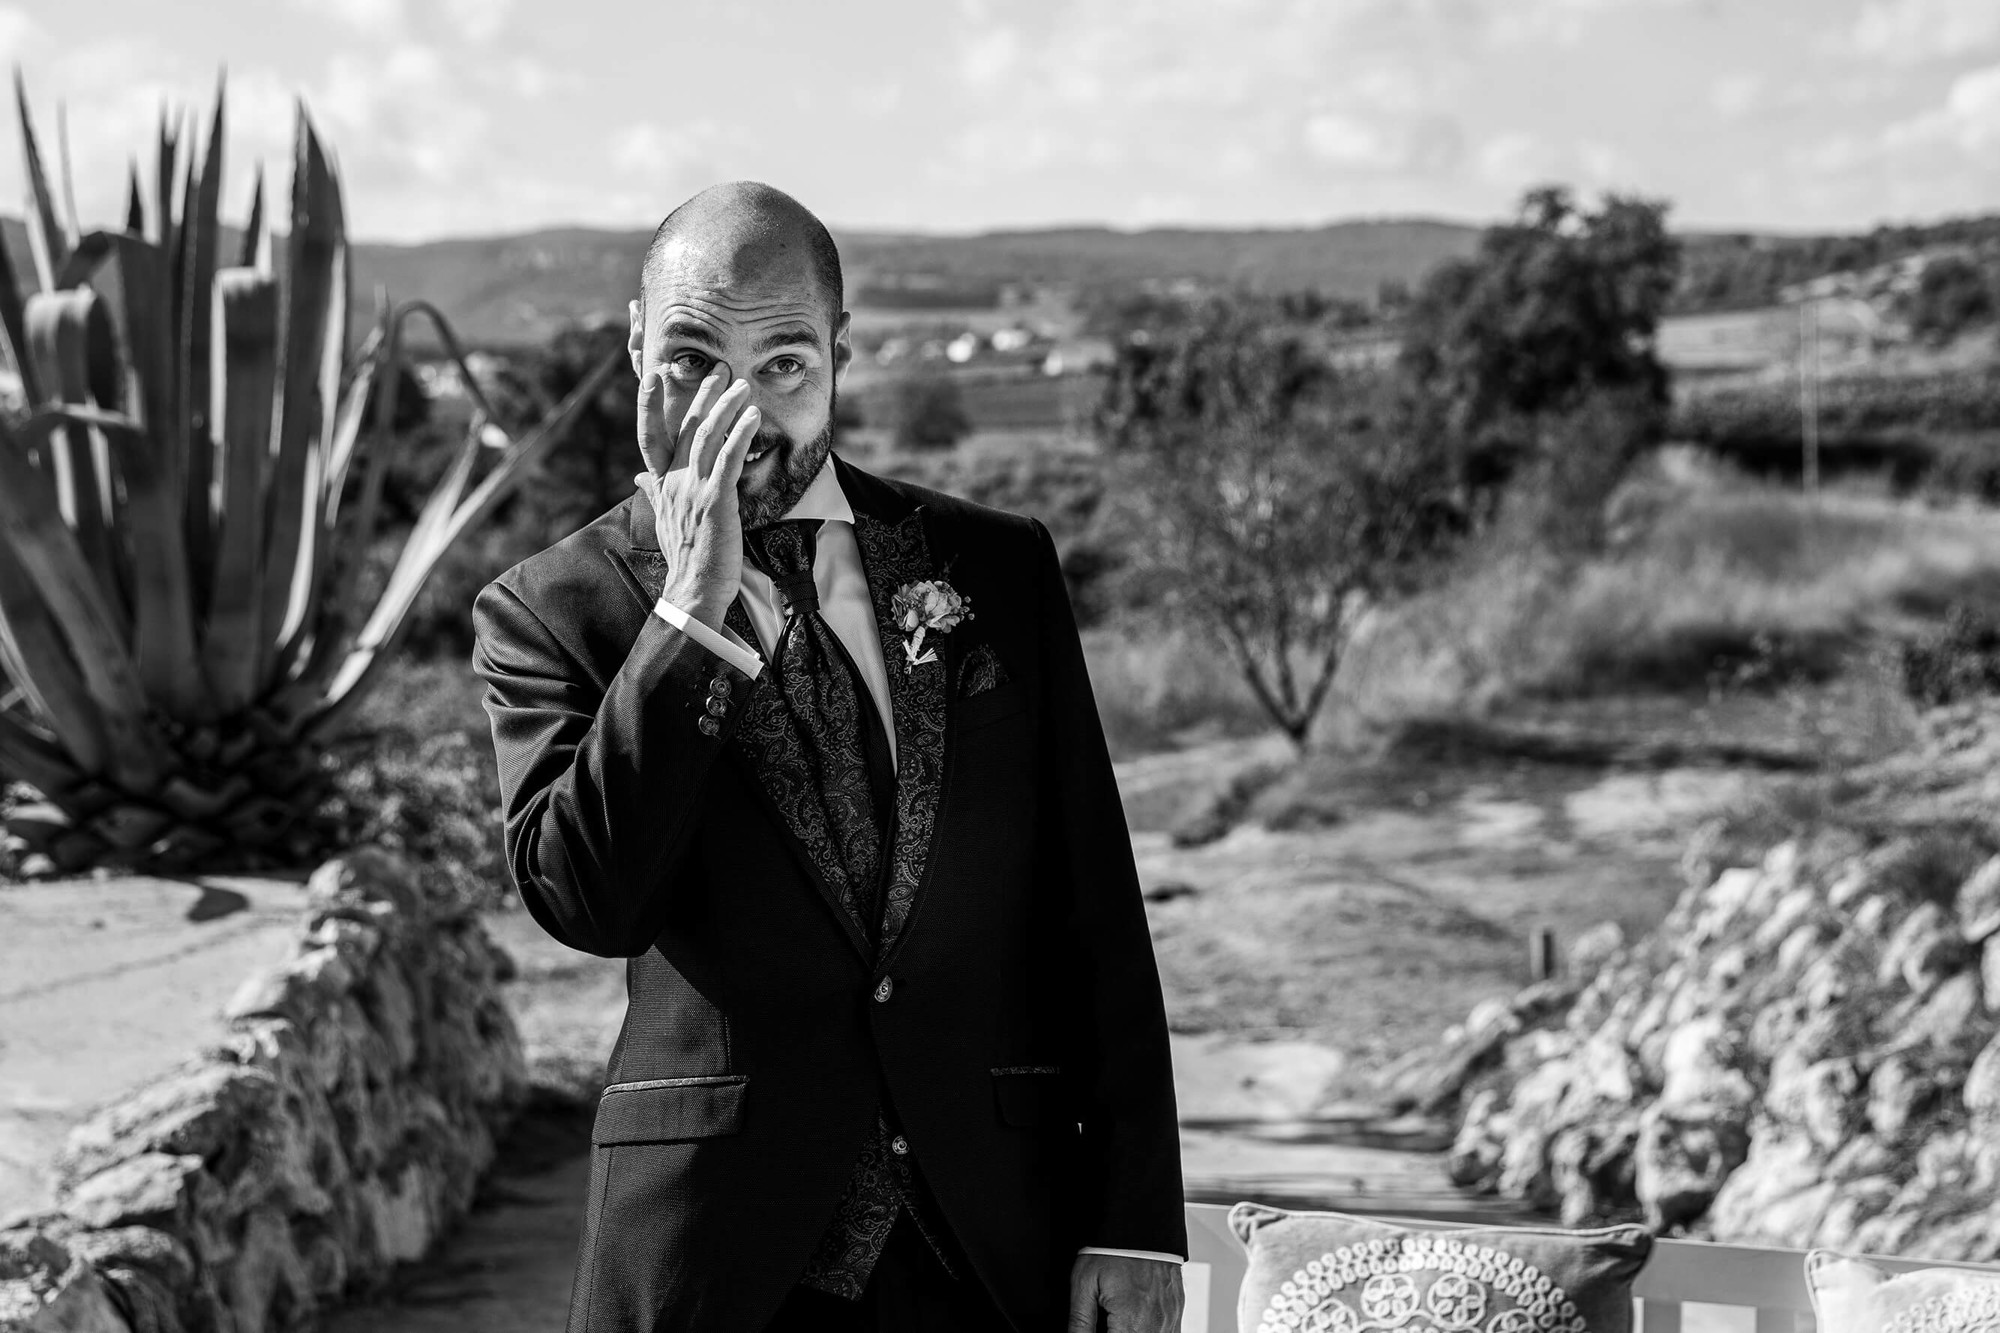 El novio llora al ver entrar a la novia a la ceremonia en Masia Torreblanca.